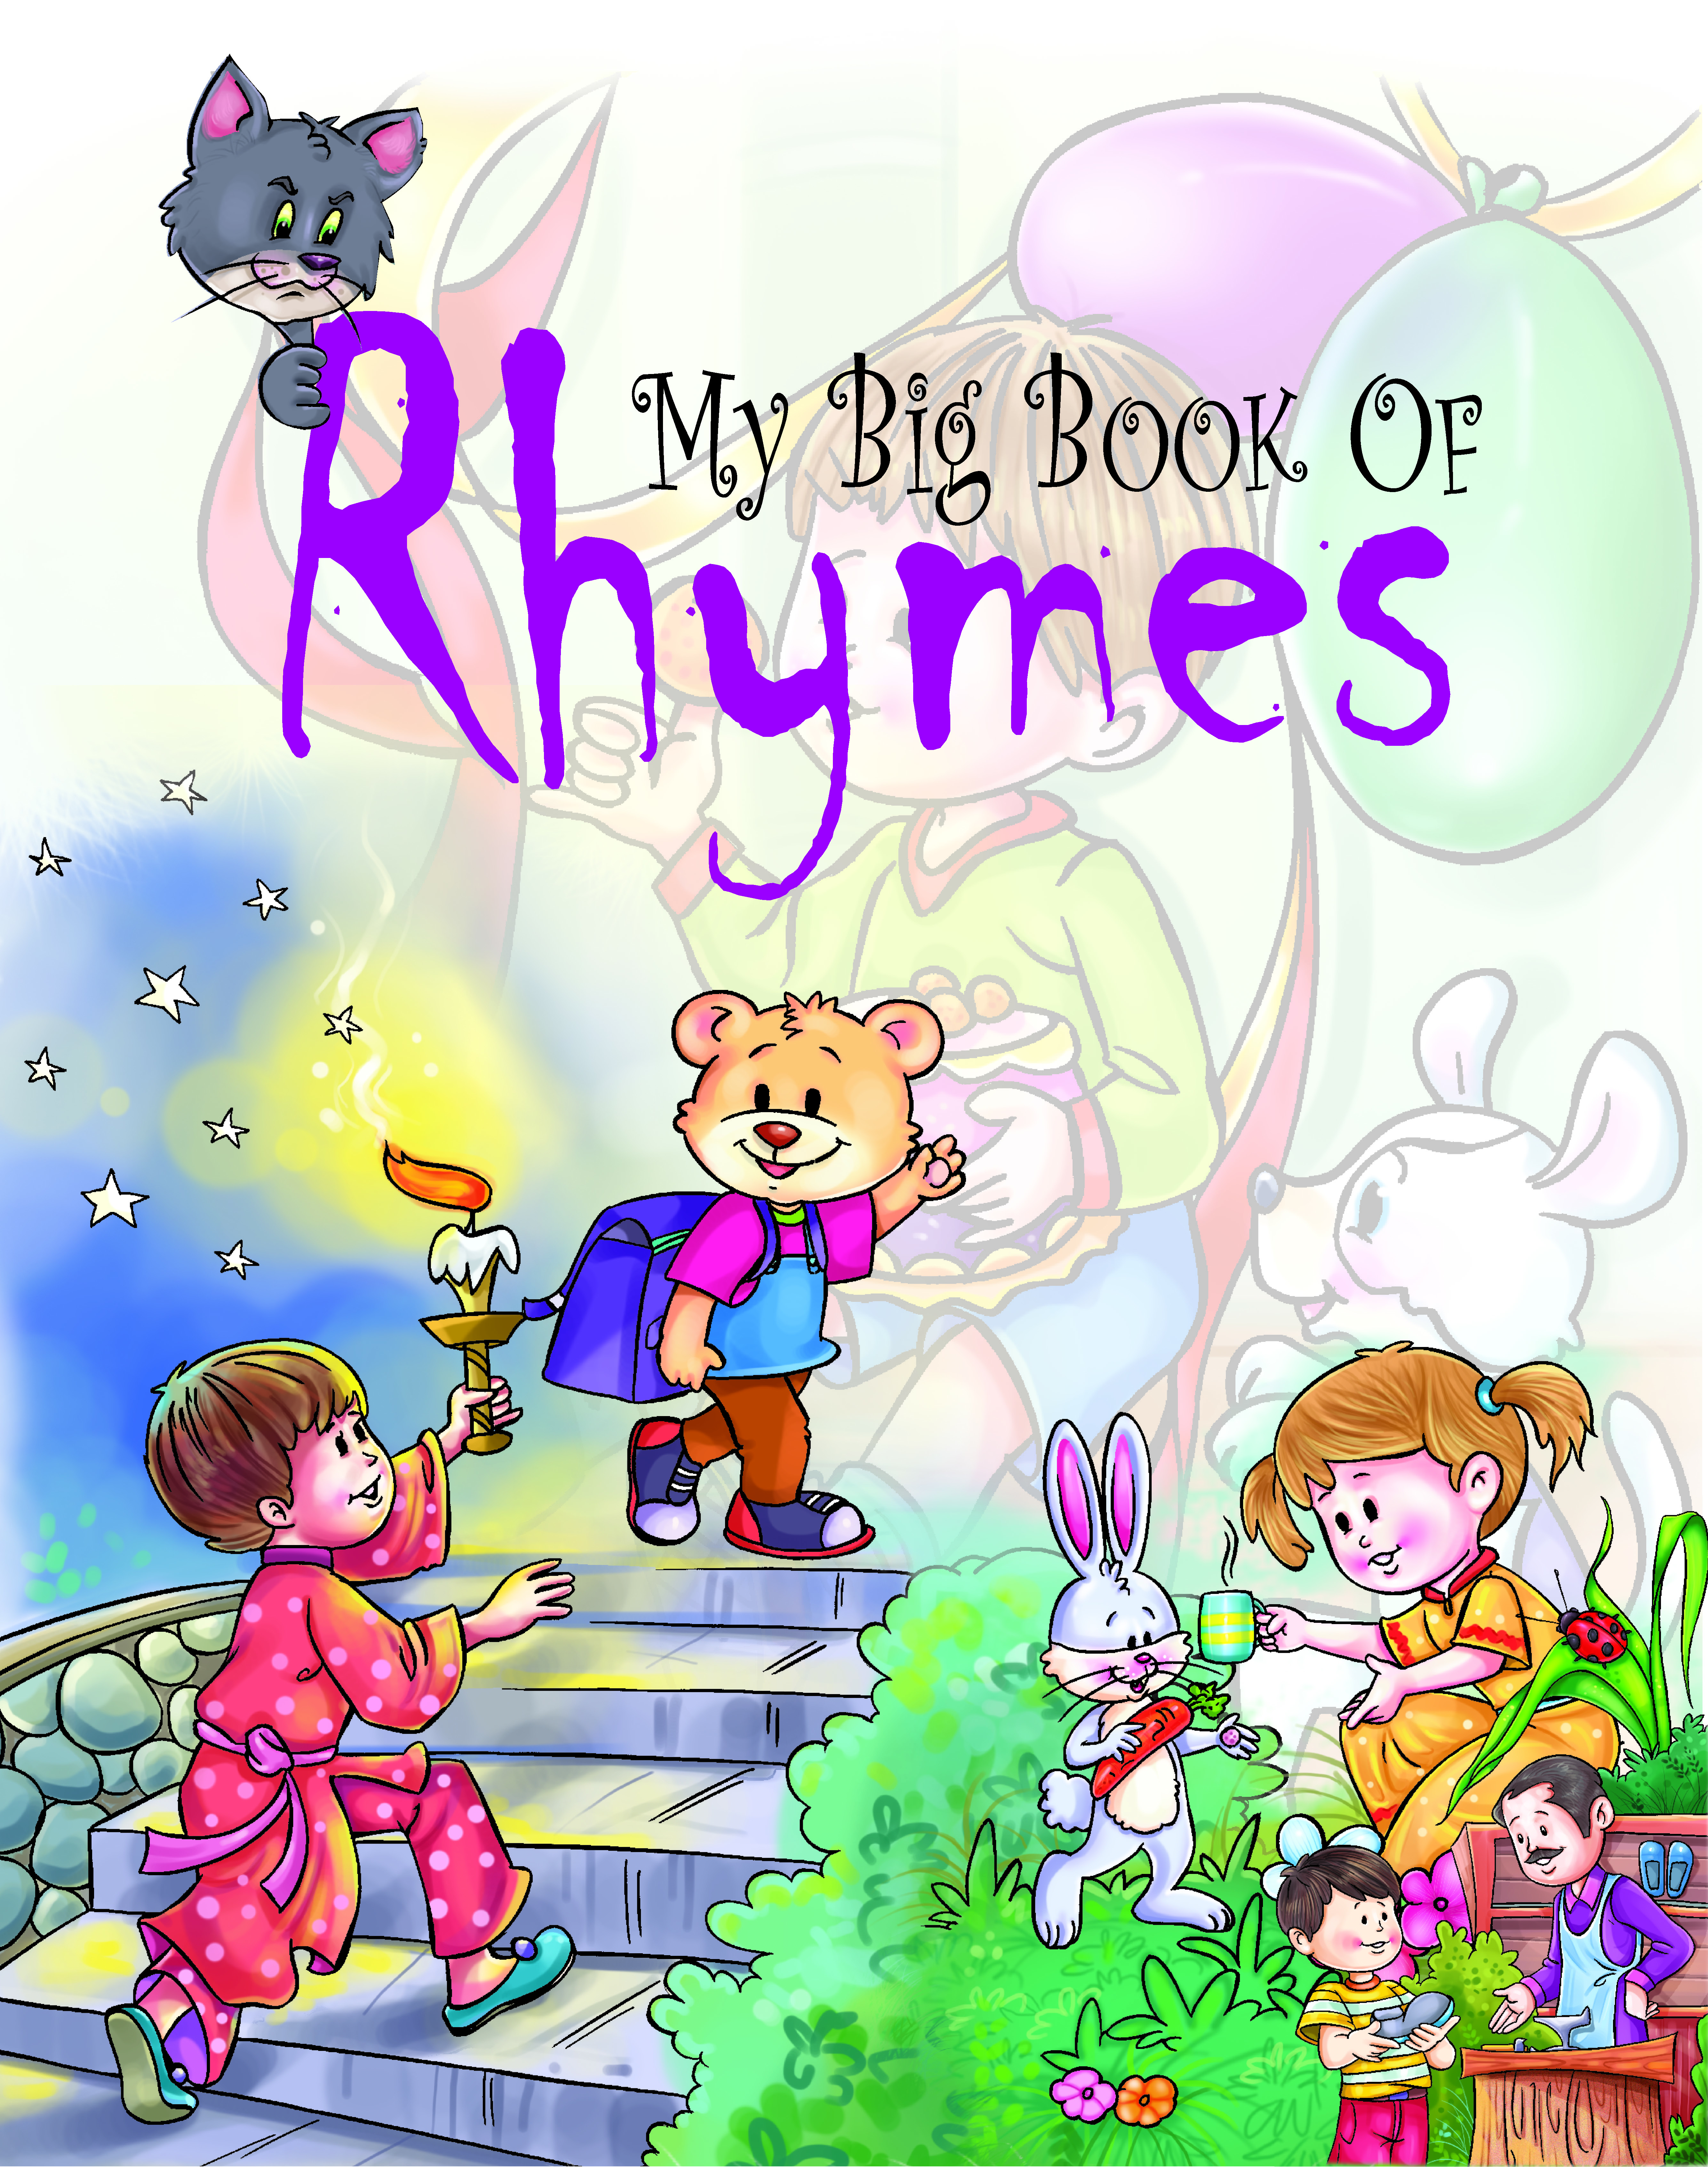 MY BIG BOOK OF RHYMES